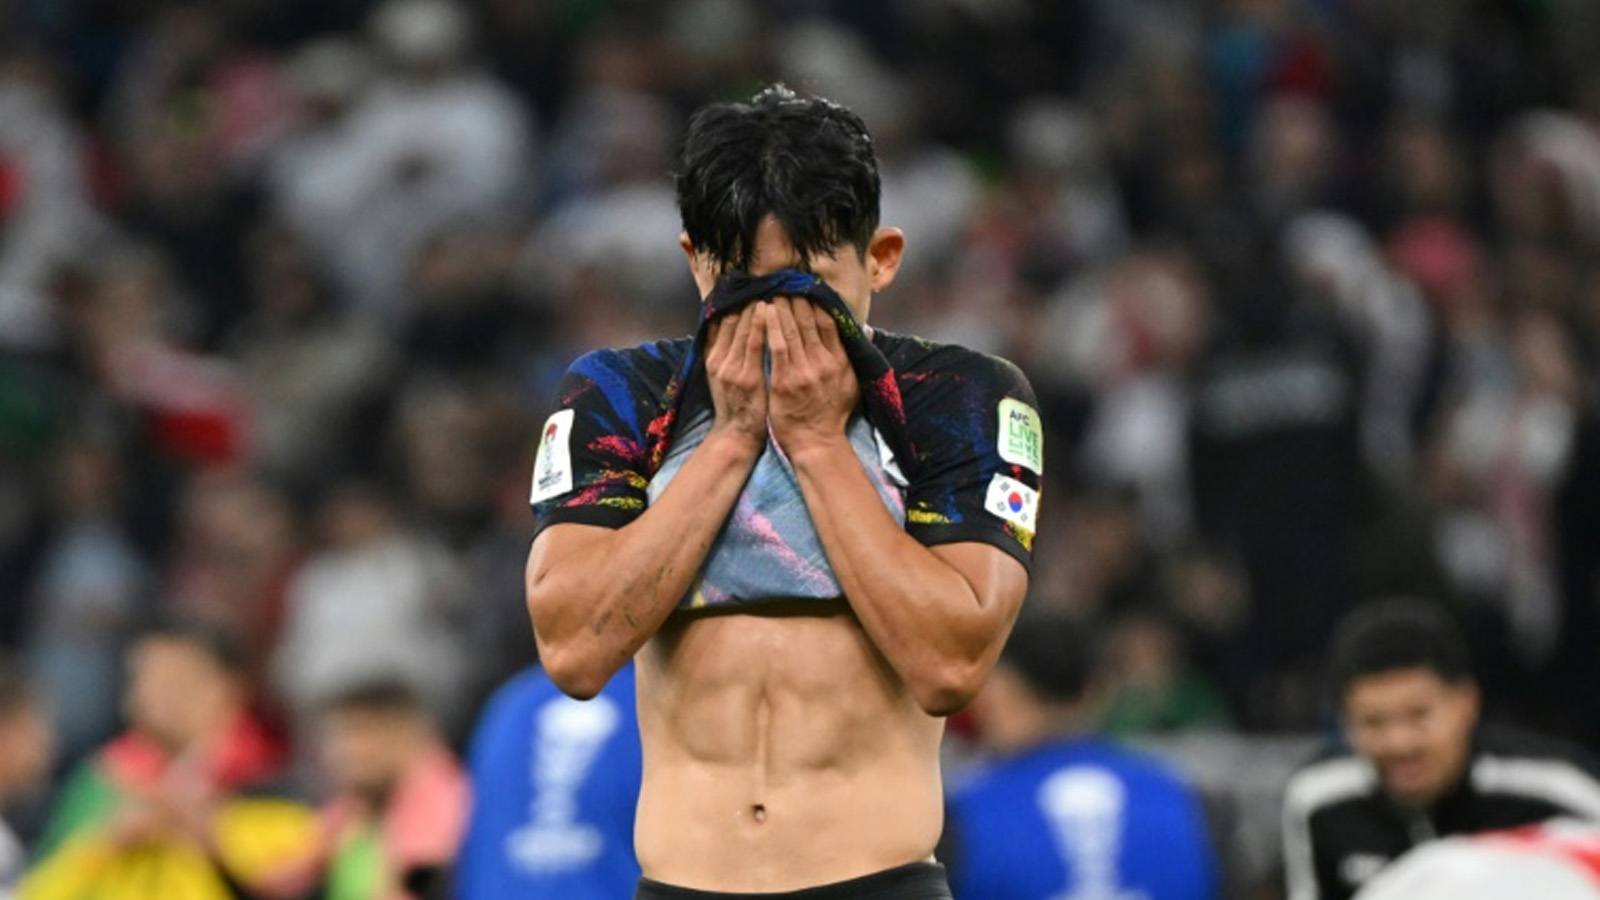 لاعب الوسط الكوري الجنوبي وو-يونغ جيونغ متأثّراً بعد الخسارة أمام الأردن 0-2 في نصف نهائي كأس آسيا 2023 الثلاثاء على استاد أحمد بن علي